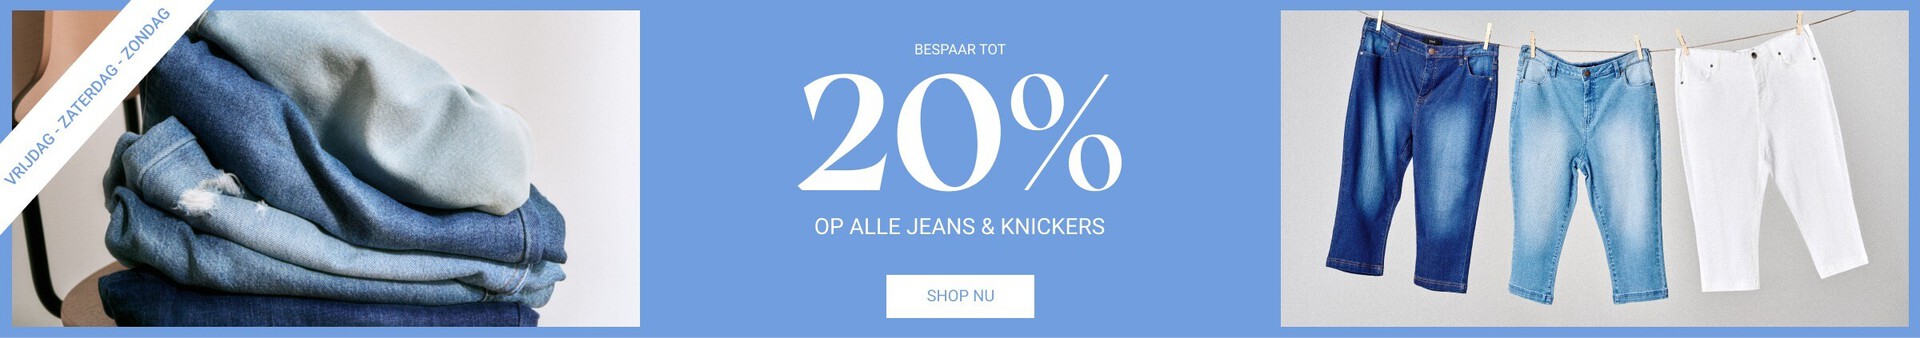 20% op alle jeans en gebreide kleding - Zizzi